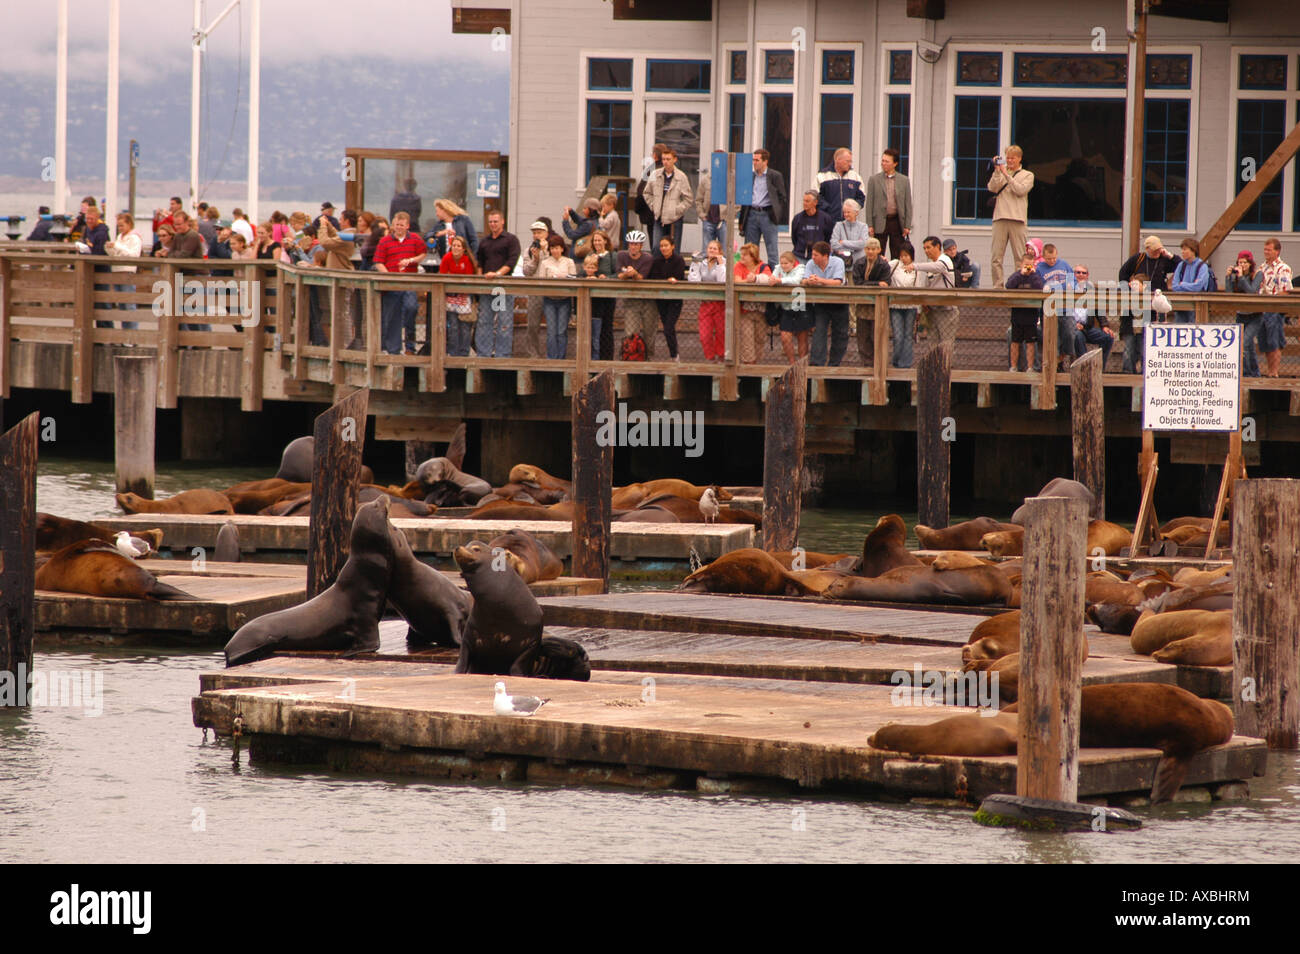 Les touristes à regarder les lions de mer dans le Pier 39 de Fisherman s Wharf San Francisco California USA Banque D'Images